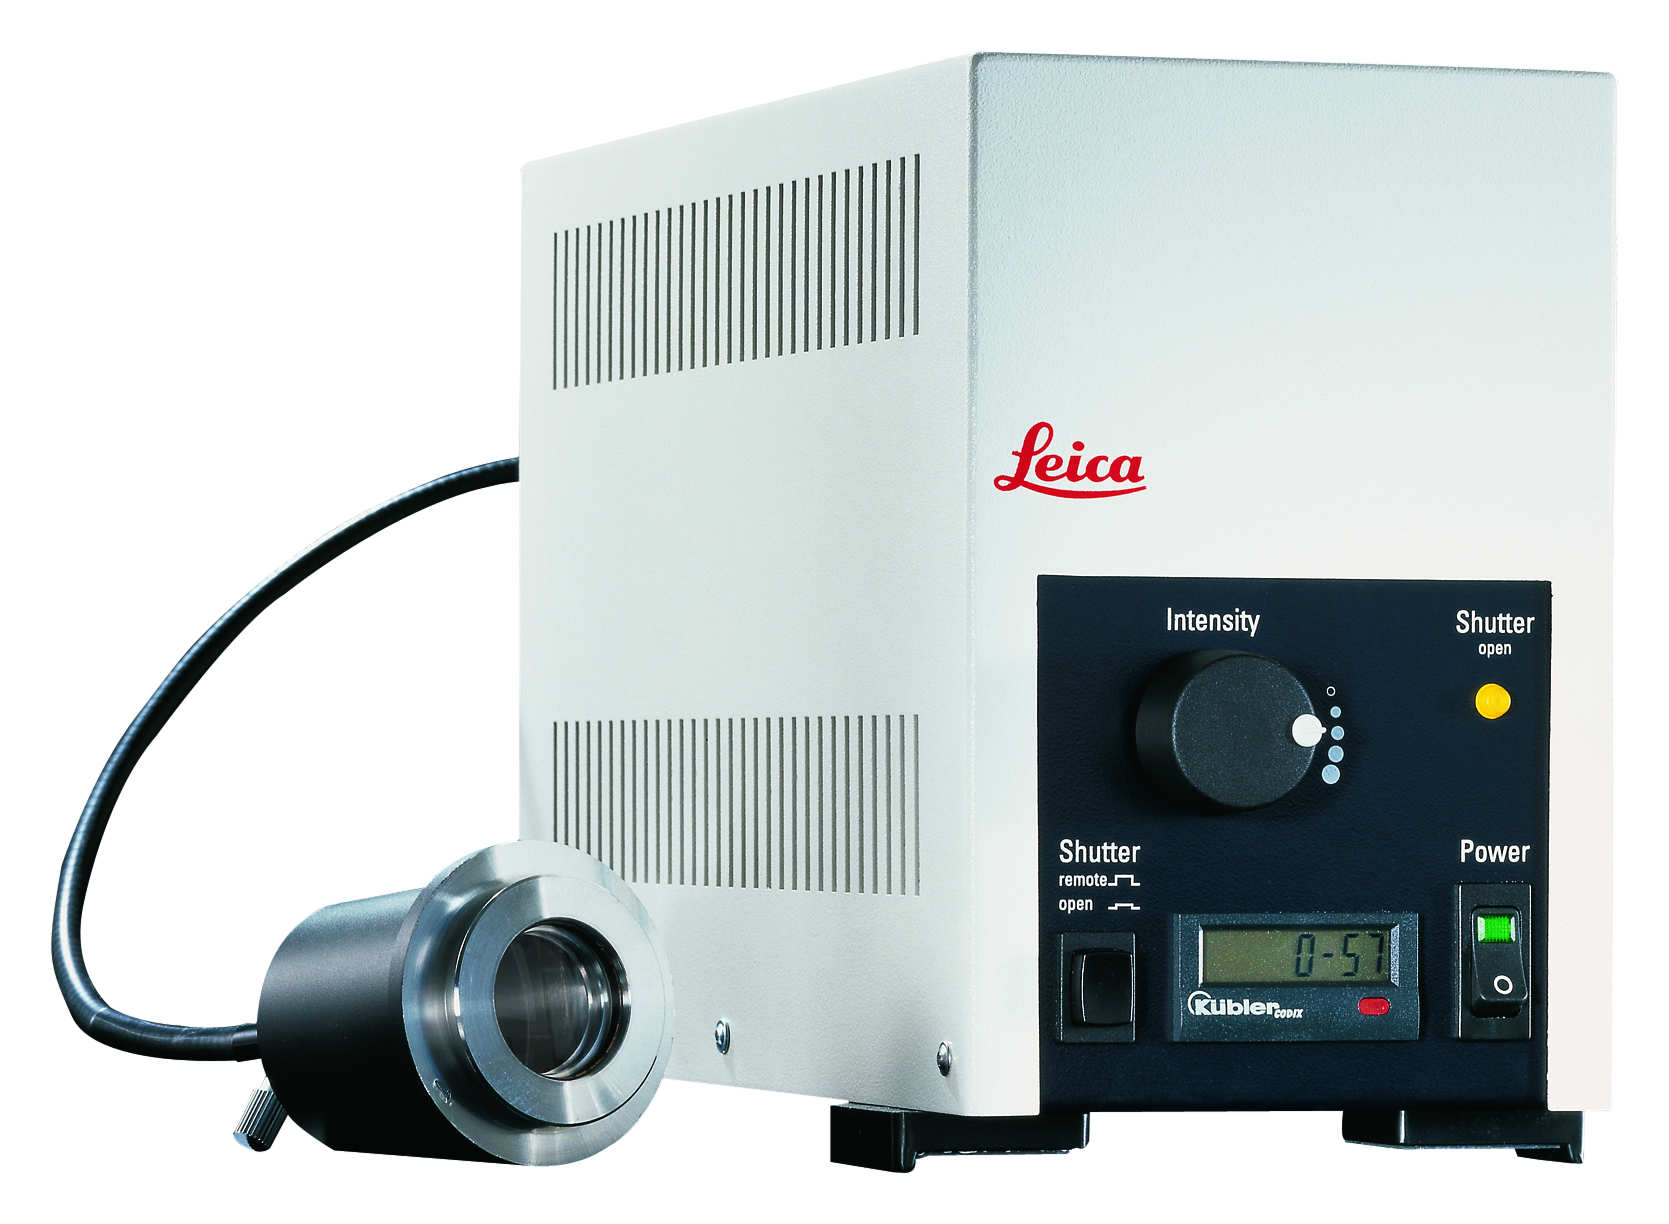 Il Leica EL6000 rappresenta un'ottimizzazione ideale e accessibile per l'imaging a fluorescenza.